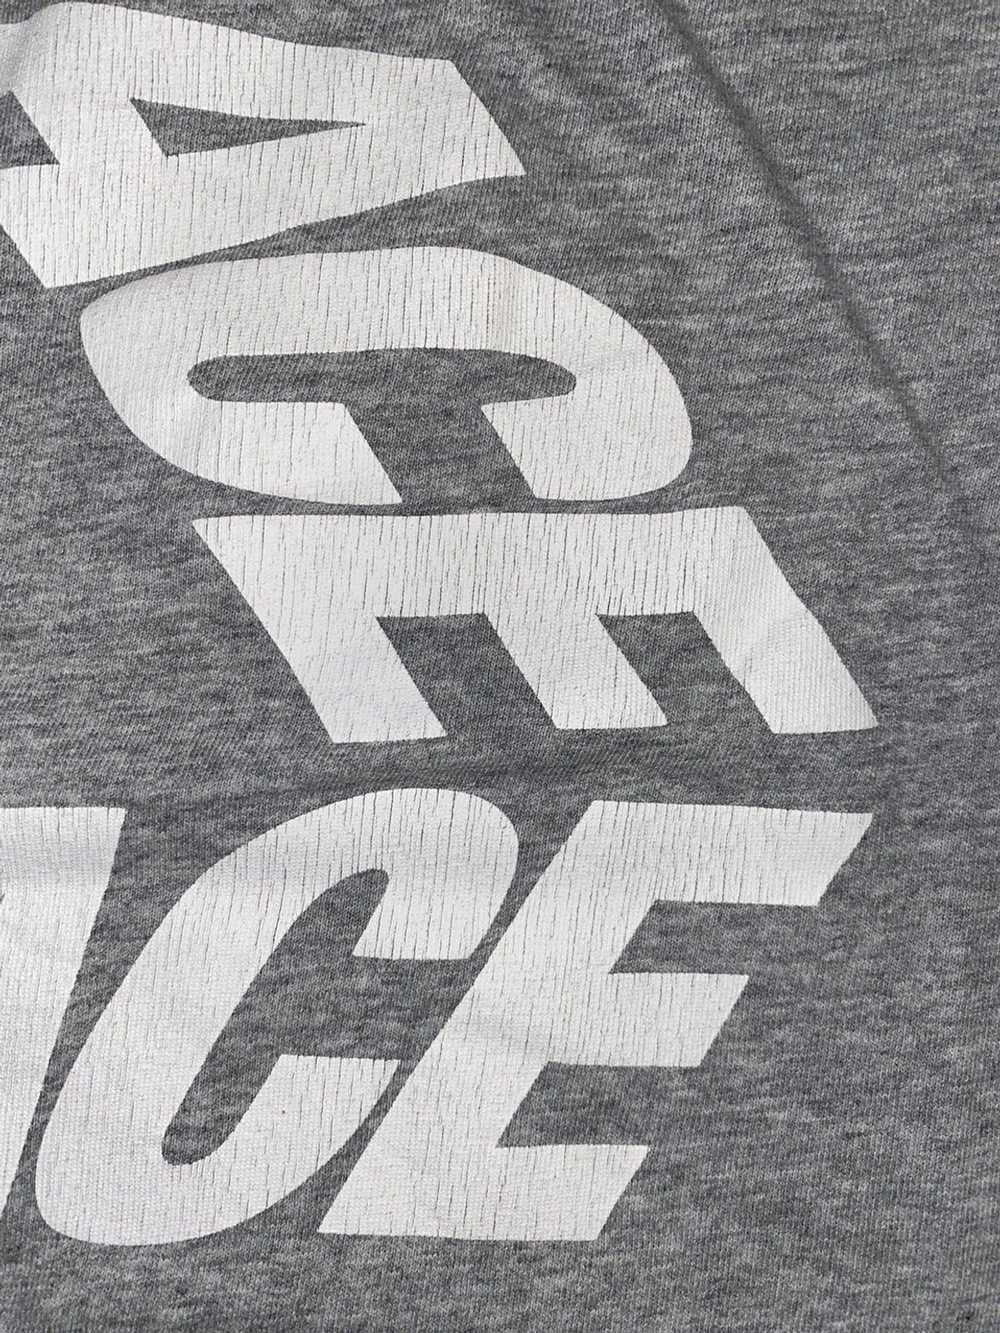 Palace 2016 Palace P3 Font Tri-Ferg T-shirt GREY … - image 10